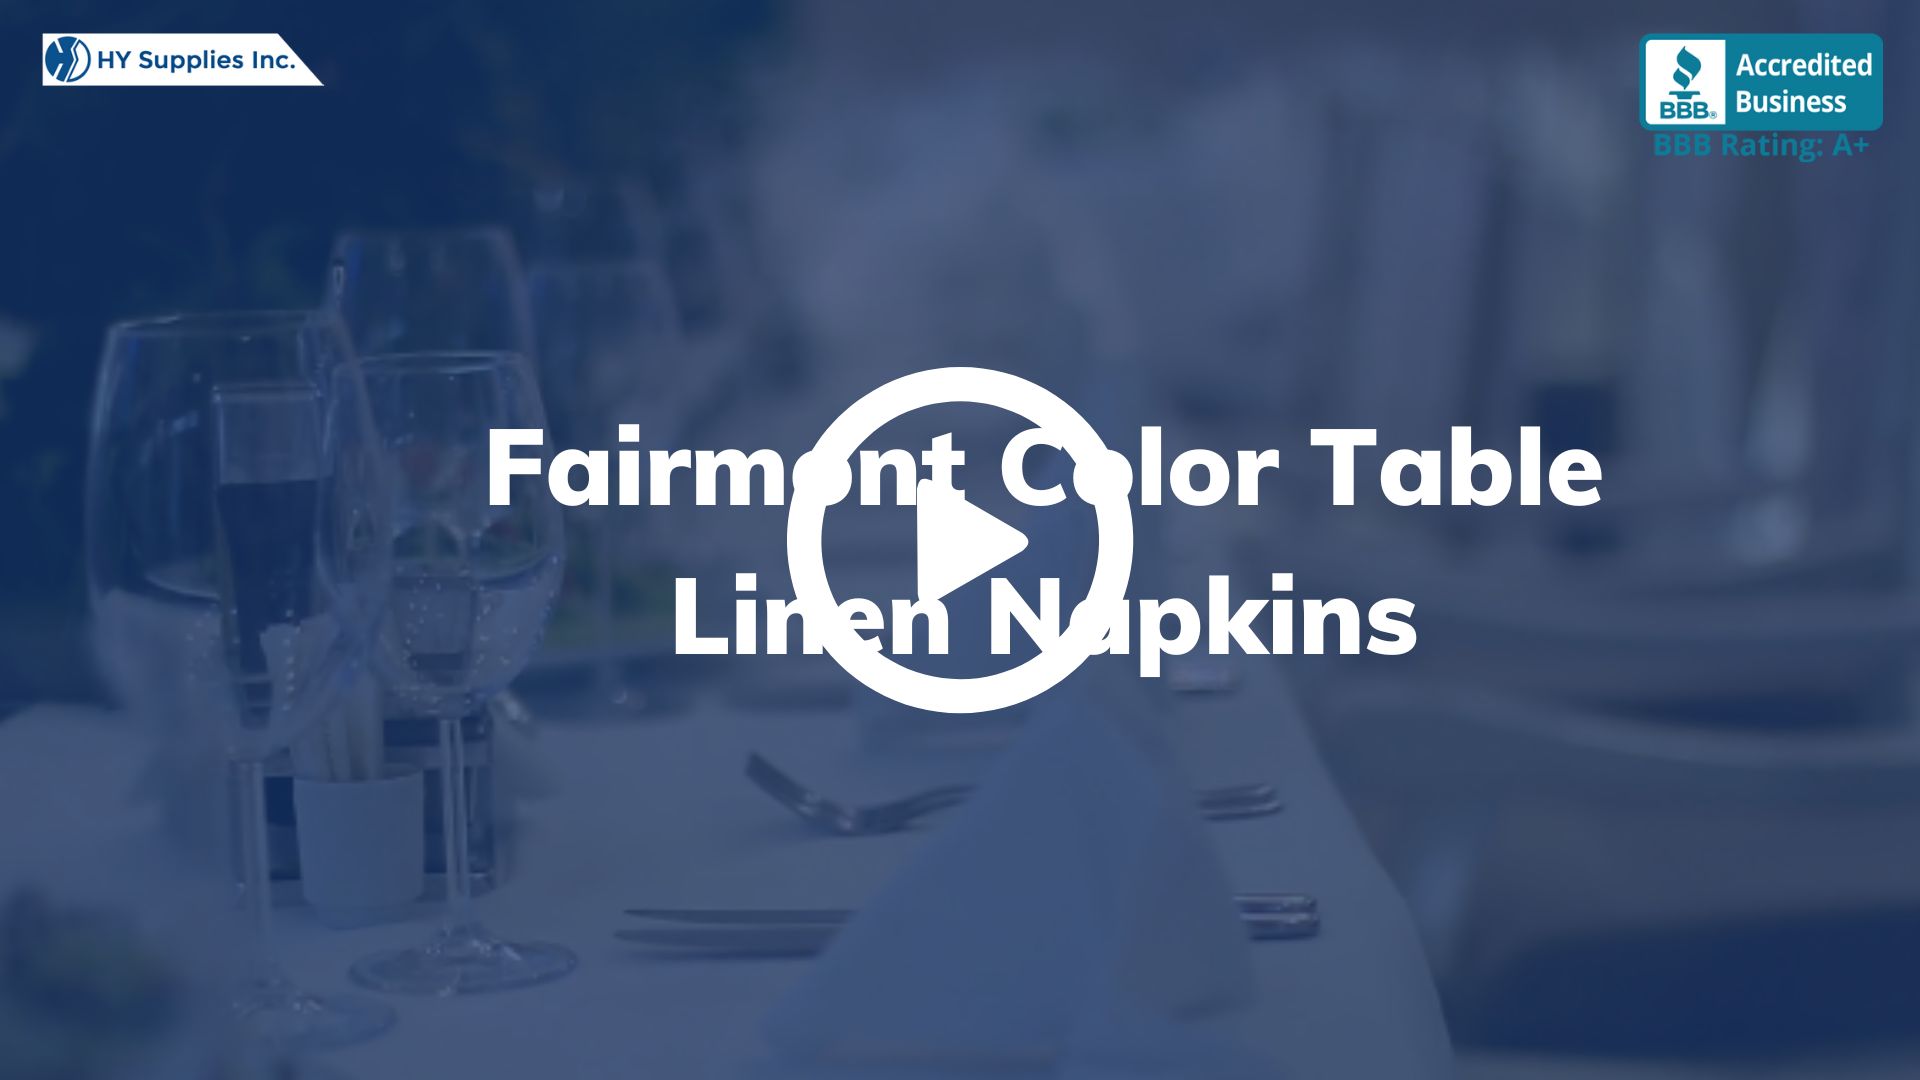 Fairmont Color Table Linen Napkins